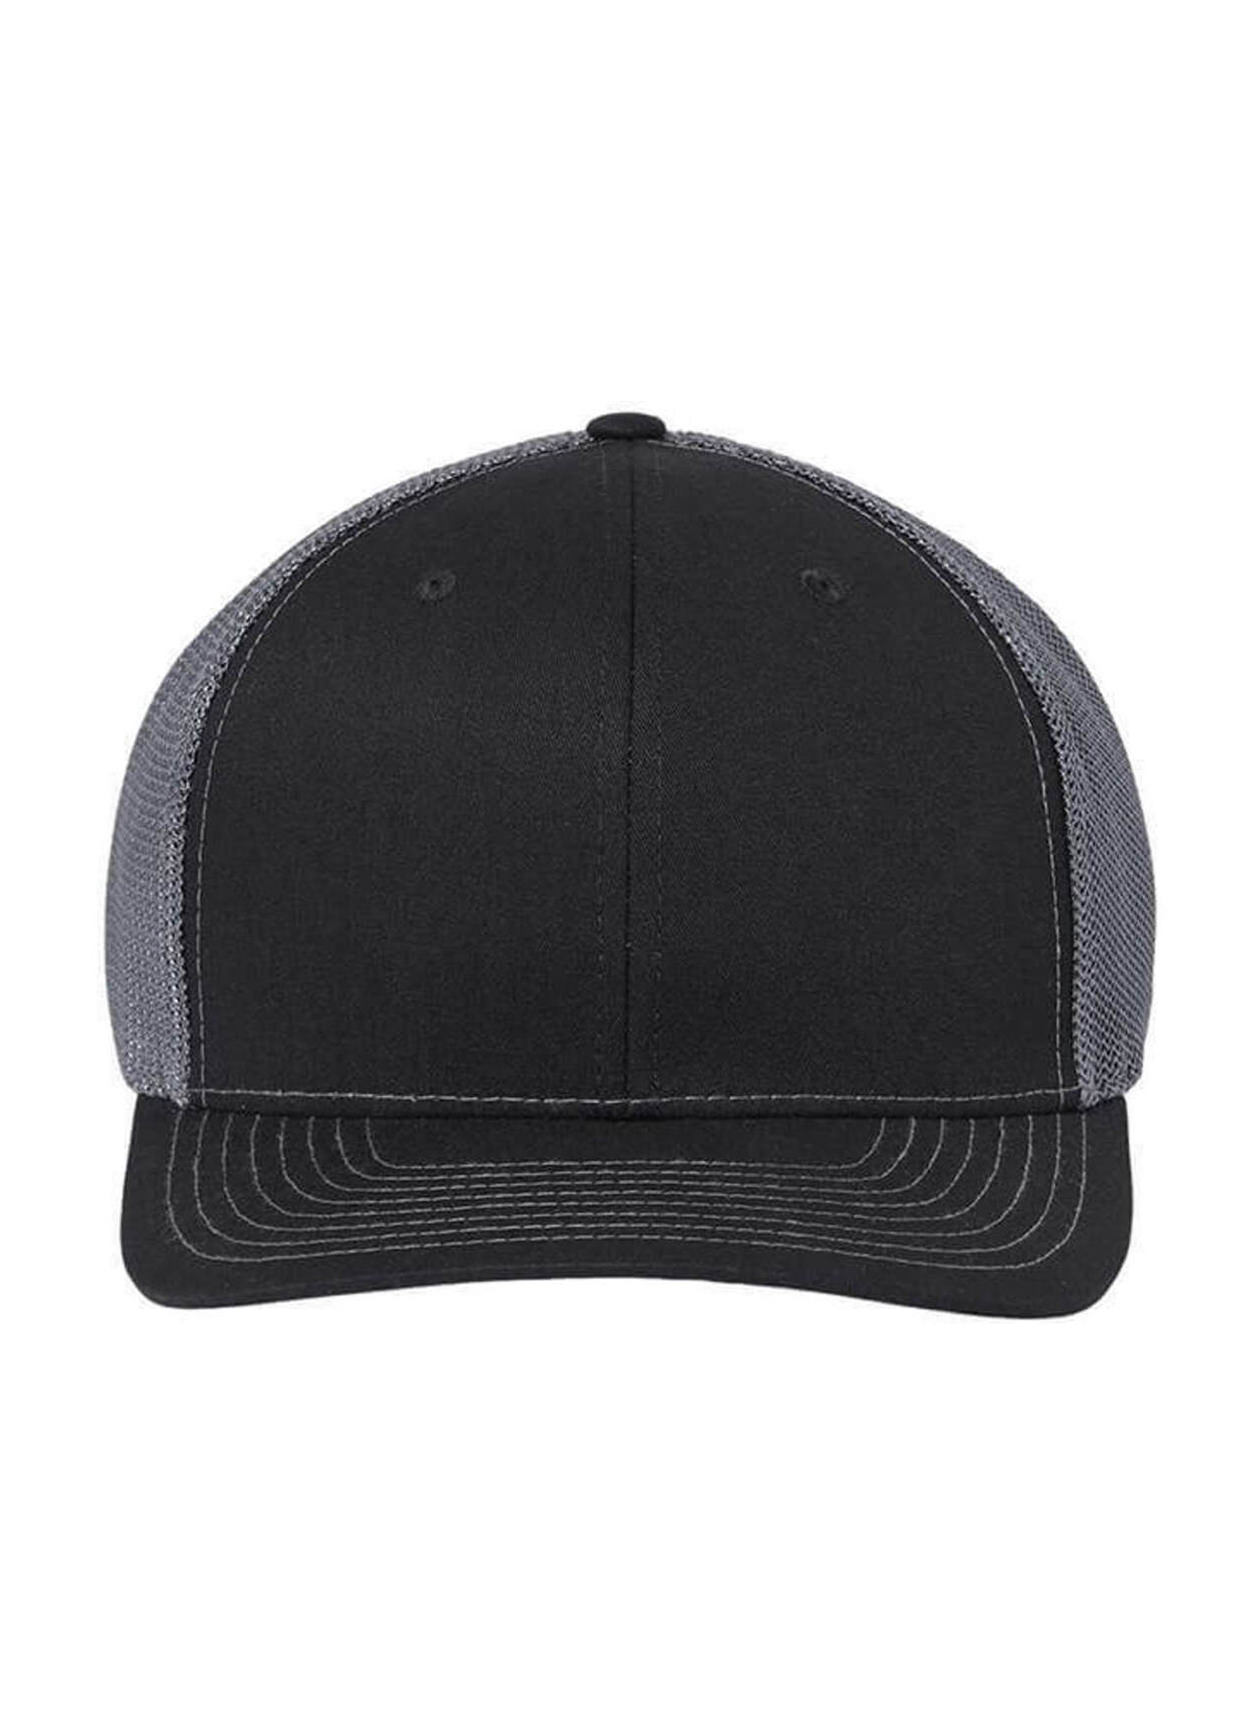 Richardson Black / Graphite Richarson 112+ R-Flex Adjustable Trucker Hat